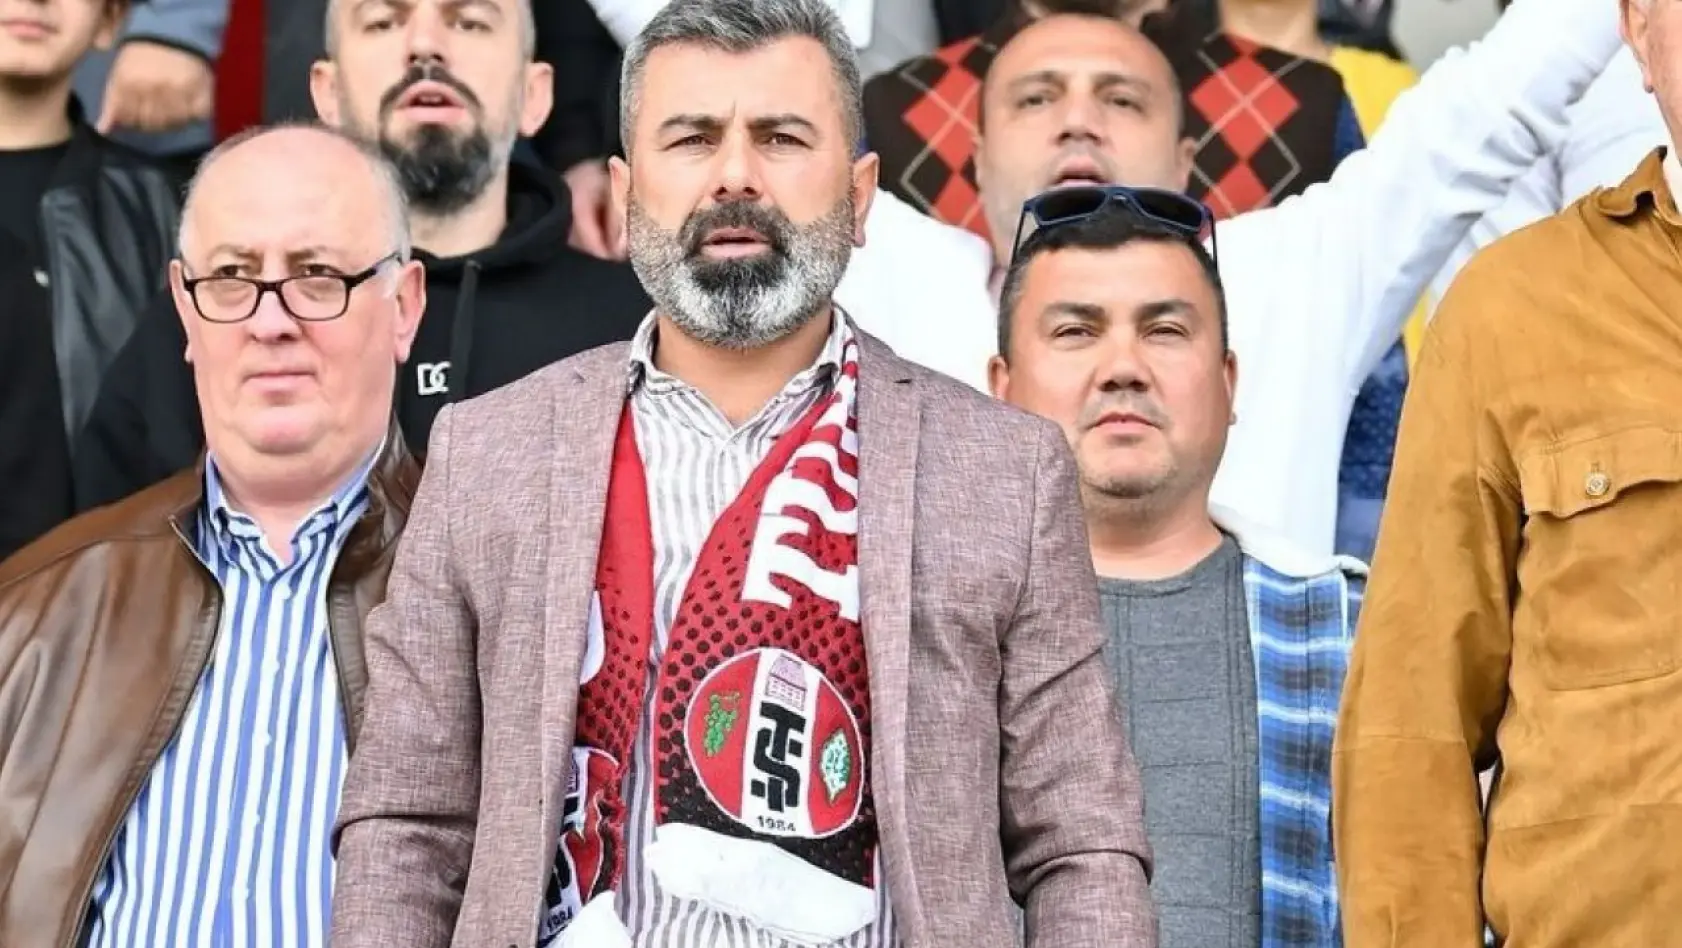 Turgutluspor Karşıyaka maçına hazır